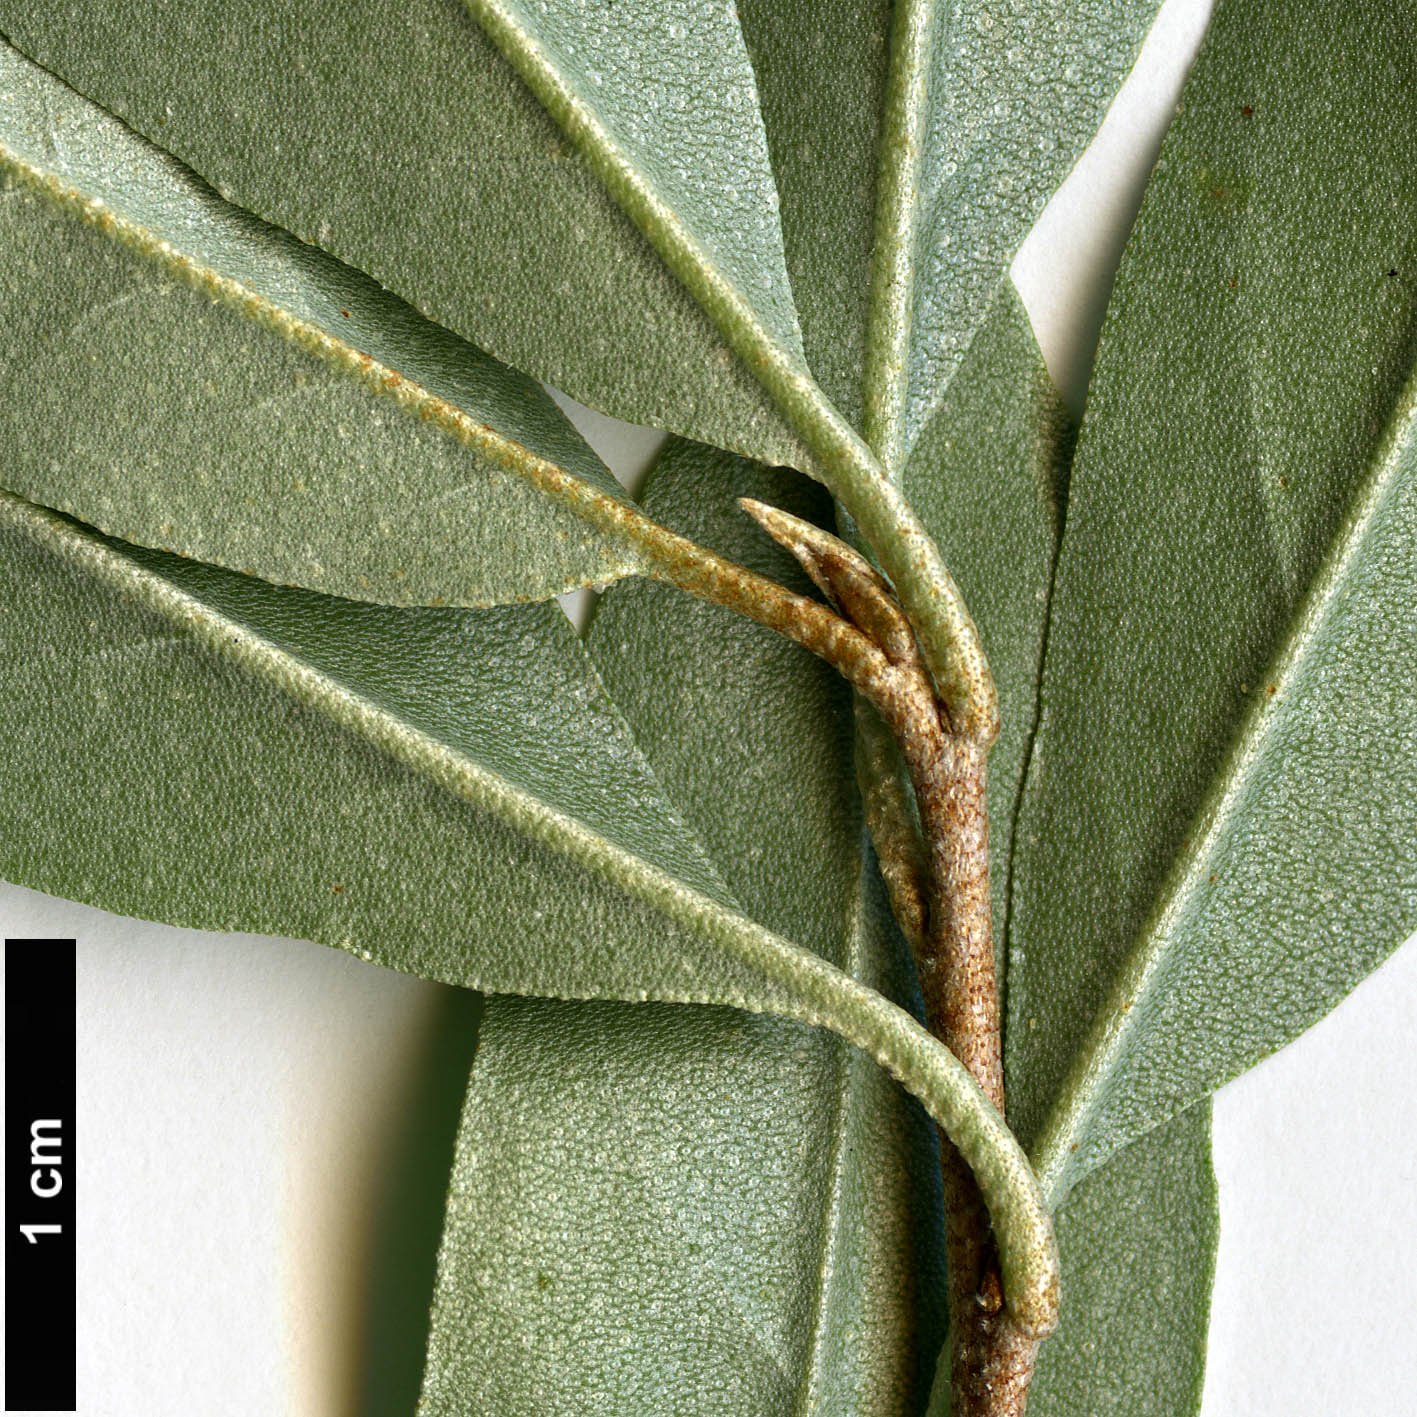 High resolution image: Family: Elaeagnaceae - Genus: Elaeagnus - Taxon: umbellata